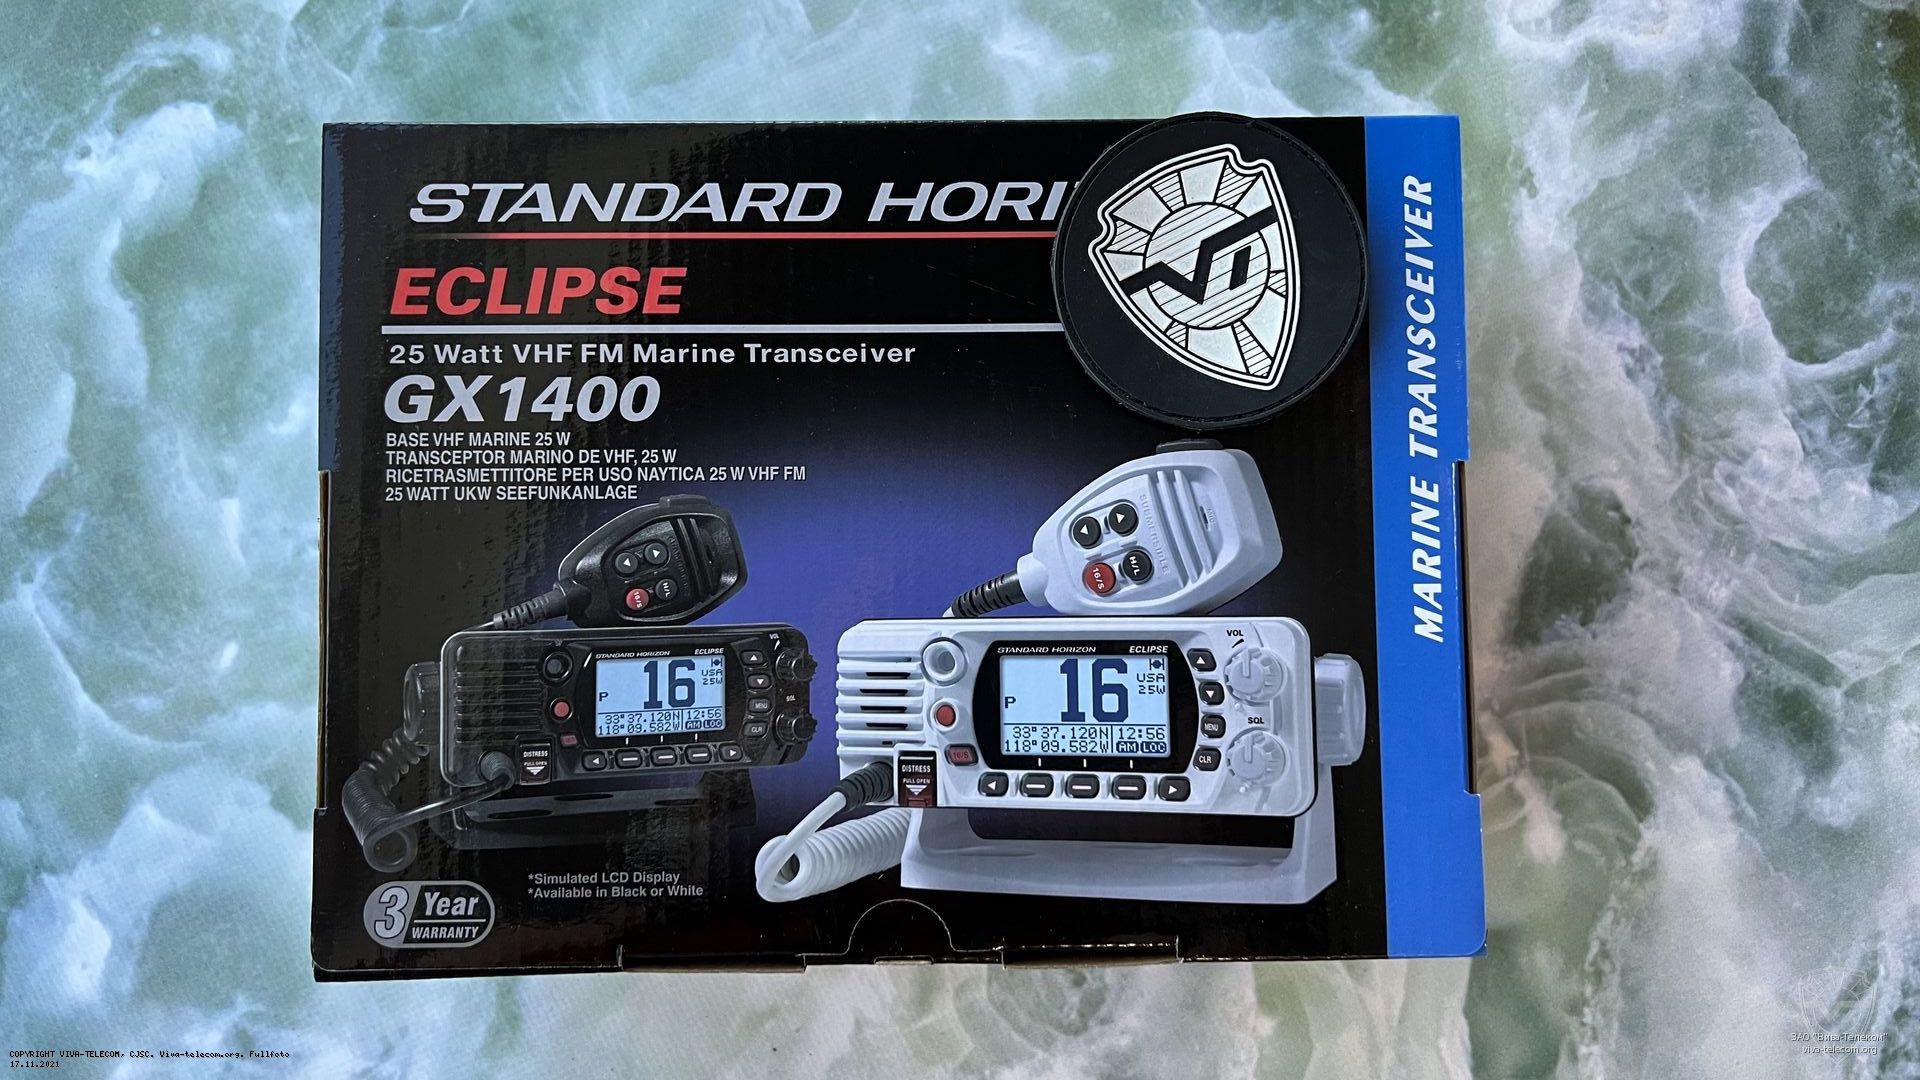   Standard Horizon GX-1400